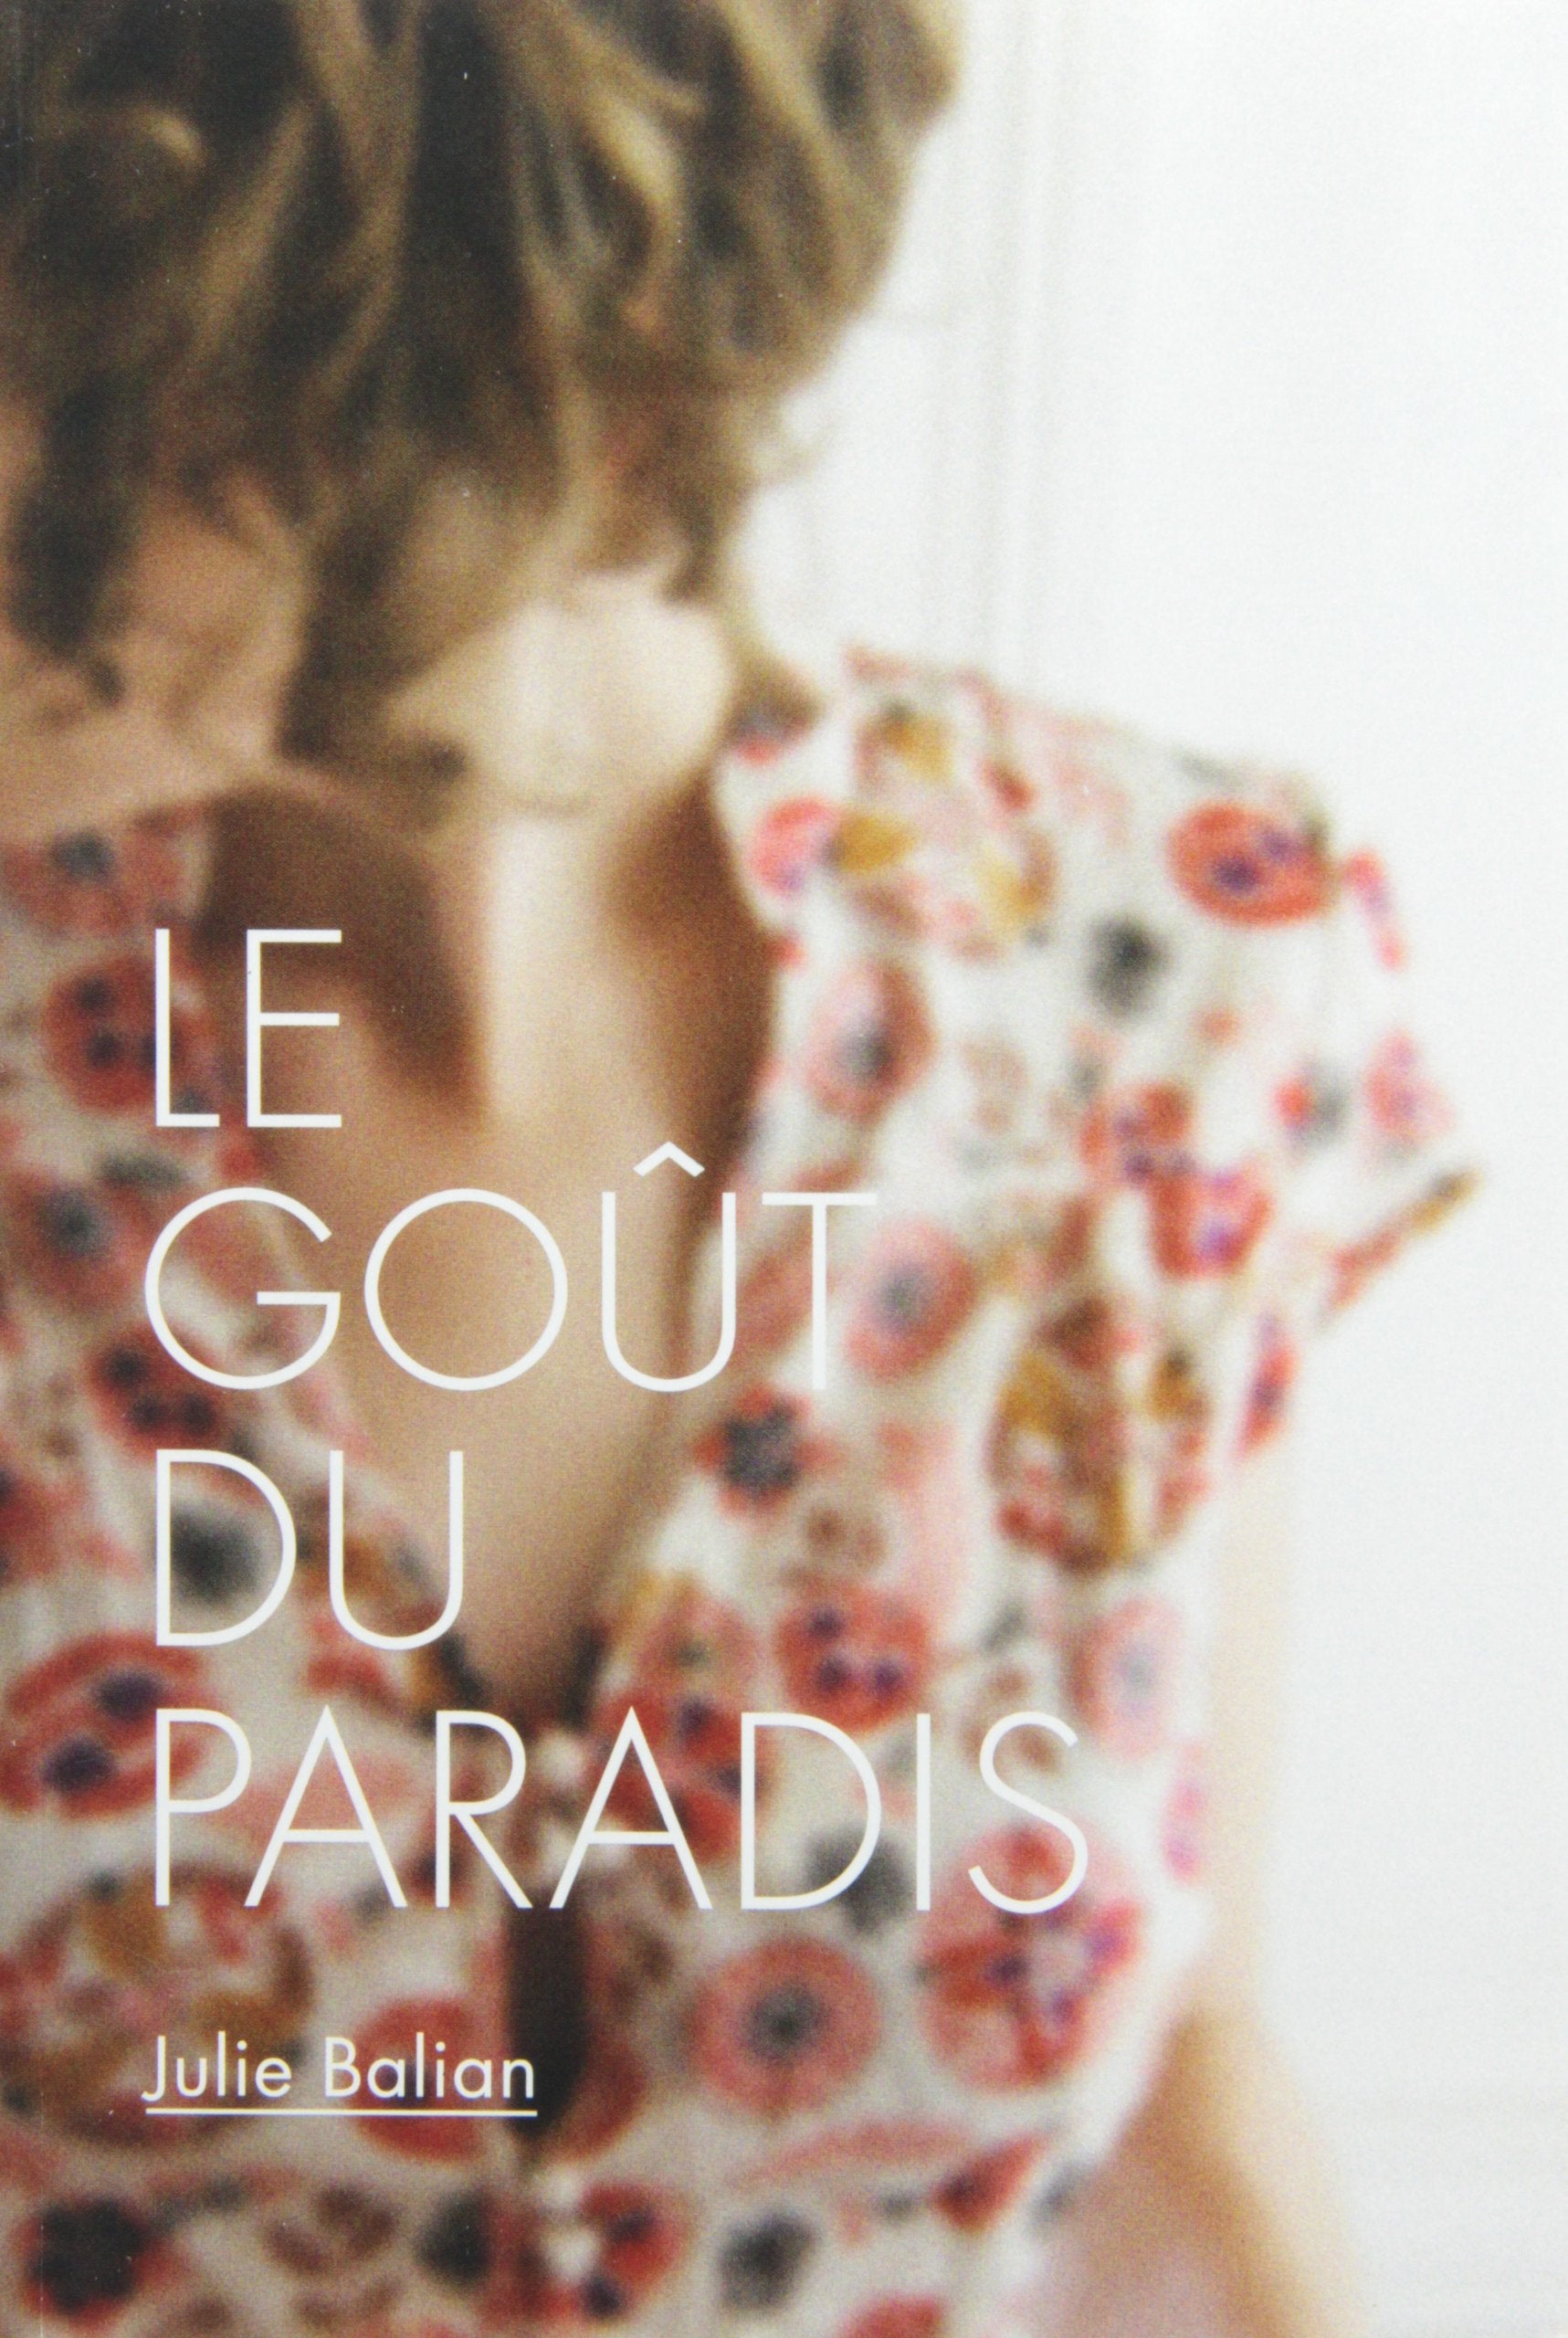 Livre ISBN 2896514953 Le goût du paradis (Julie Balian)